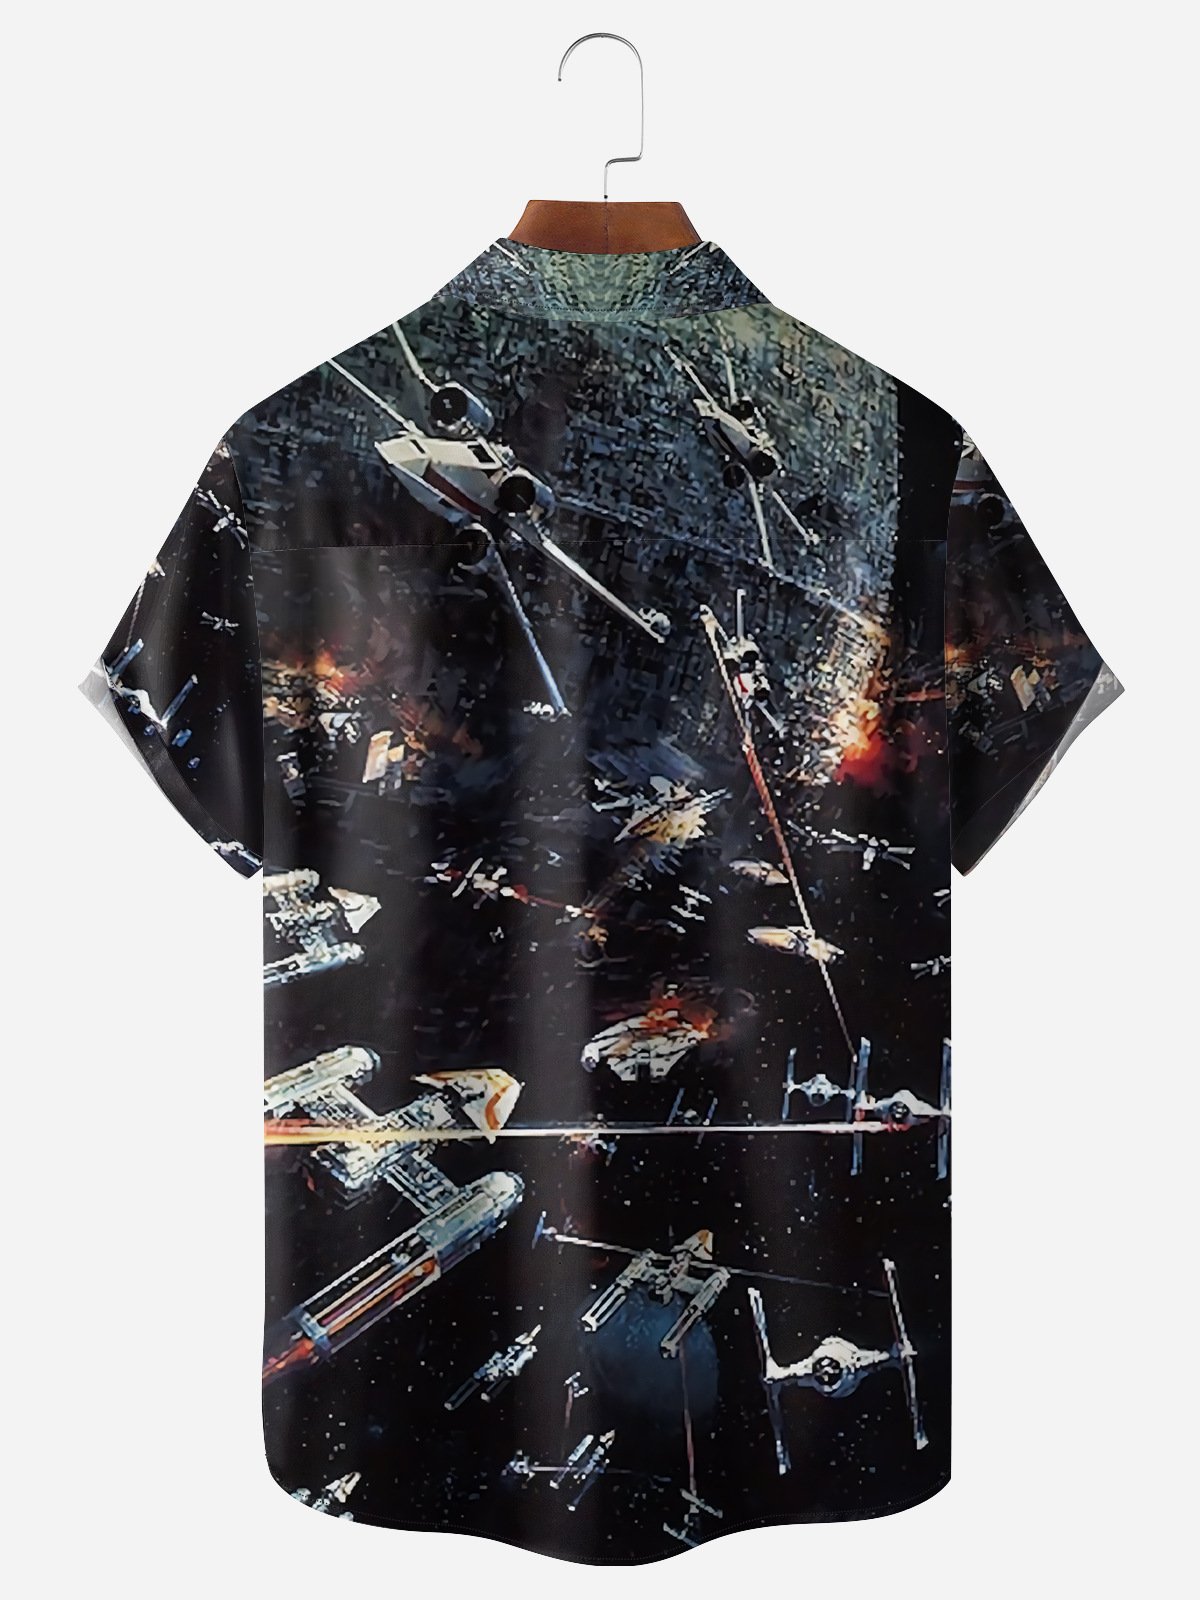 Hardaddy Starship Chest Pocket Short Sleeve Shirt